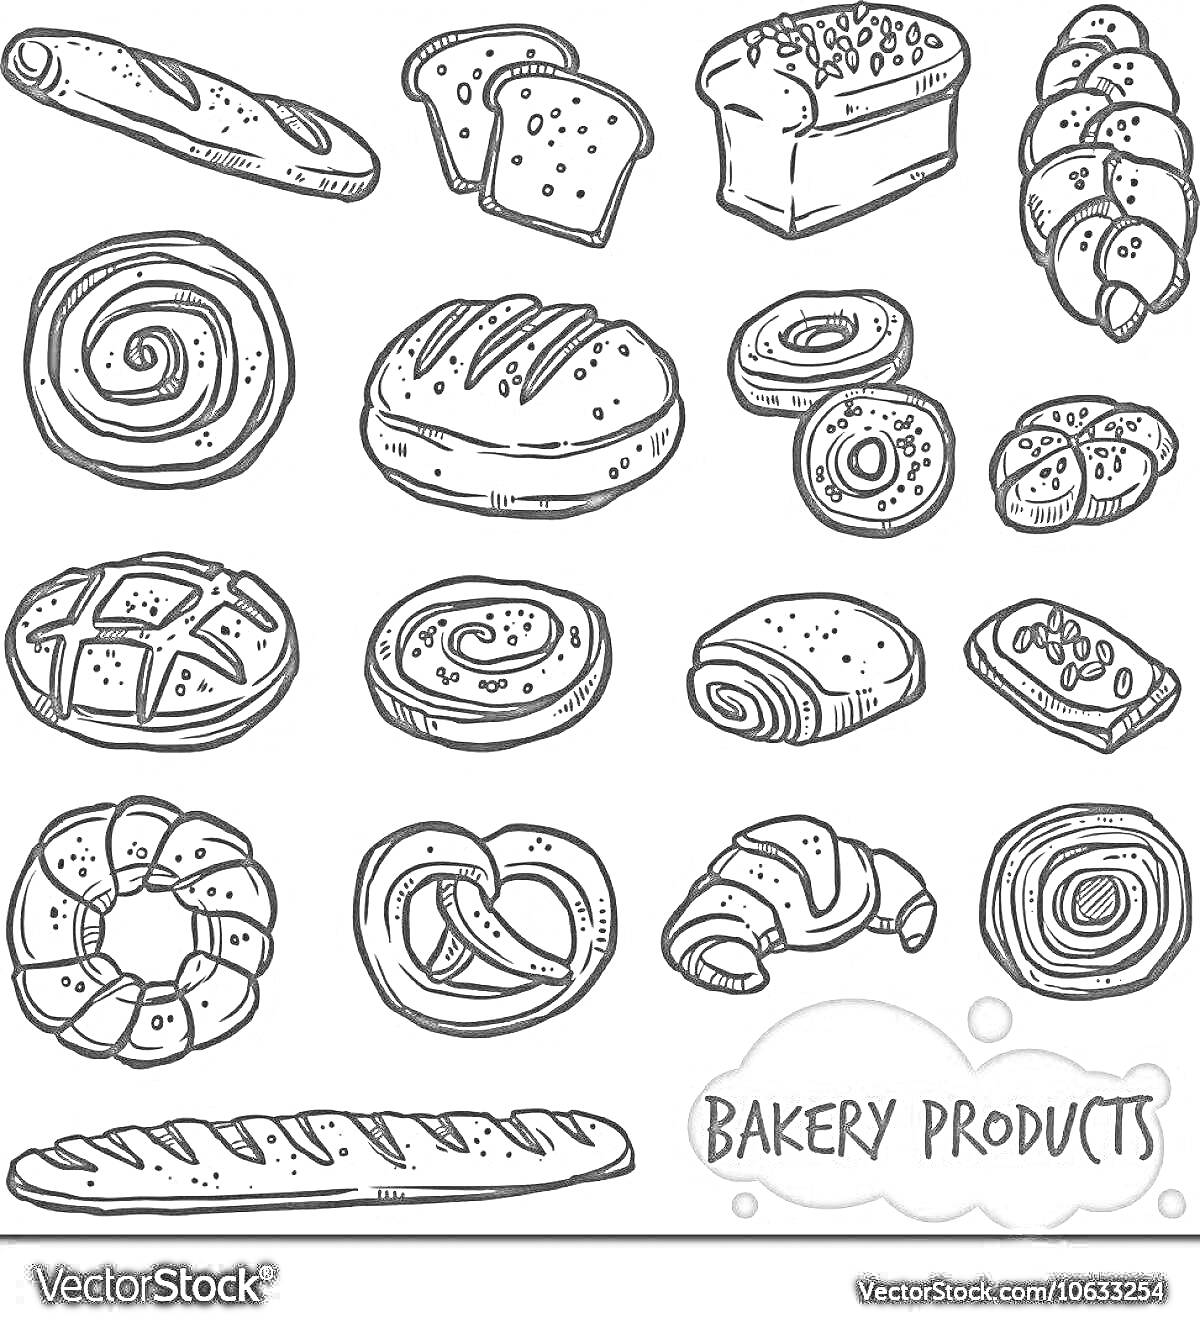 Рисунок булочек с различными хлебобулочными изделиями: багет, тосты, батон, плетёнка, улитка, булочки, кекс, крендель, круассан, хлеб, хлебная нарезка